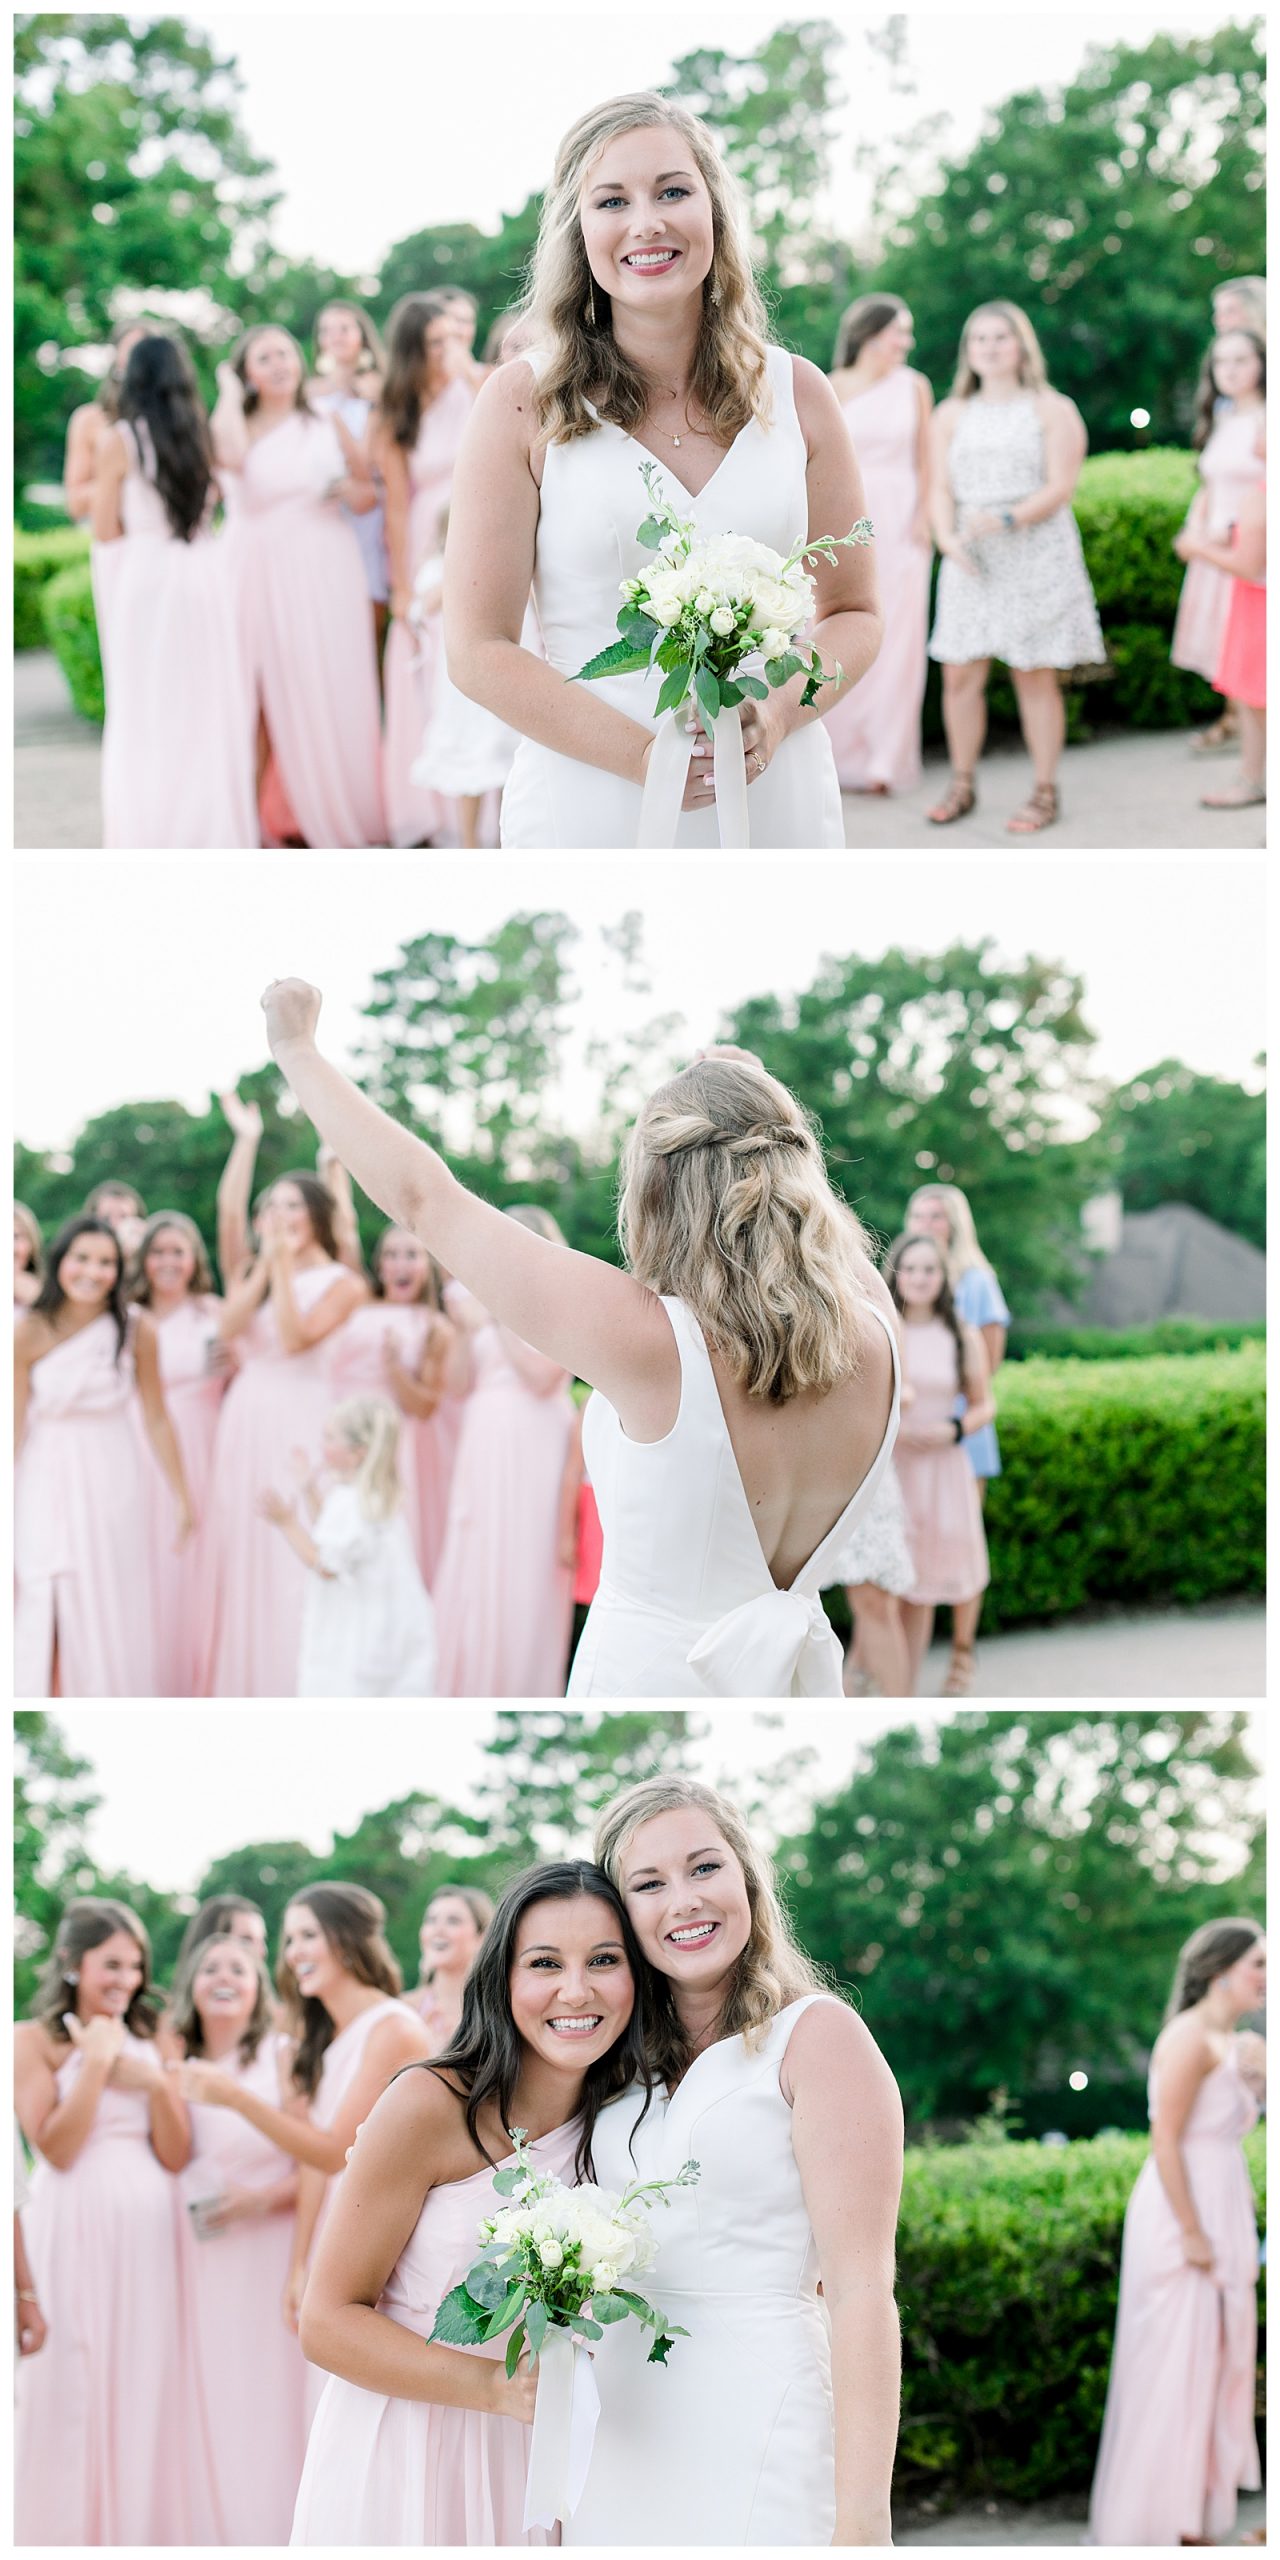 Sarah-Gabe-Fairhope-Classic-Wedding-Alabama-Photographer-Abby-Bates-Photography_0054.jpg